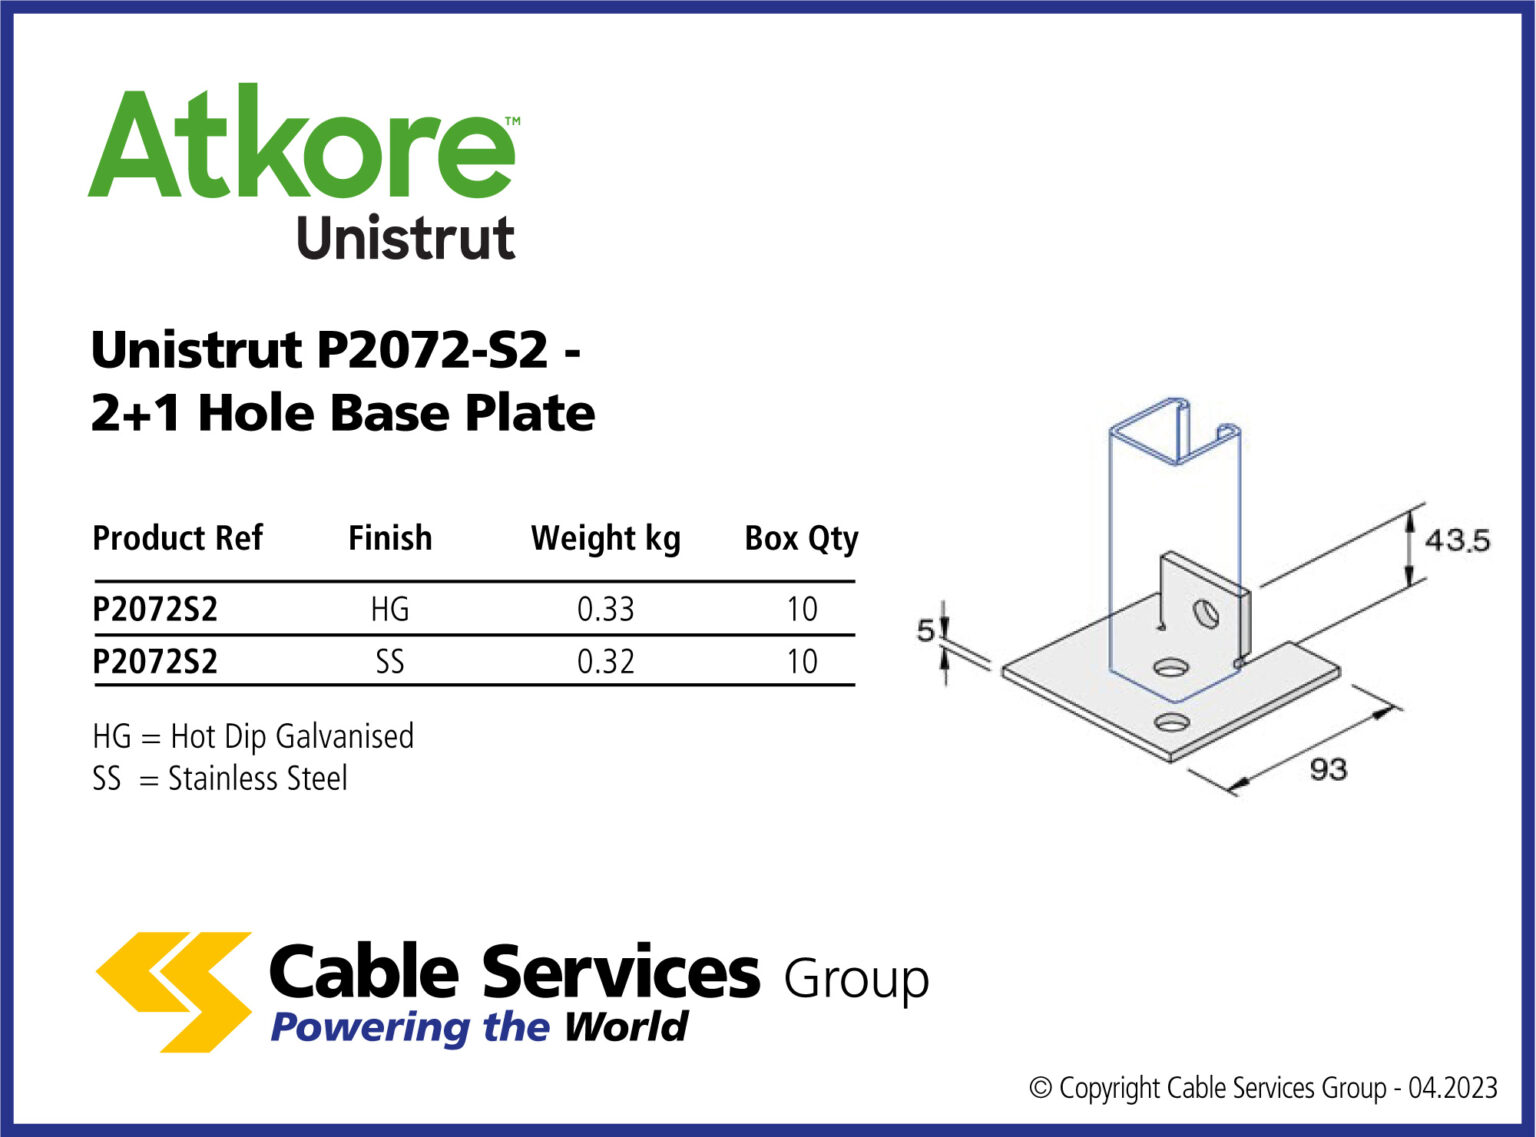 Unistrut P2072-S2 - 2+1 Hole Base Plate - Cable Services